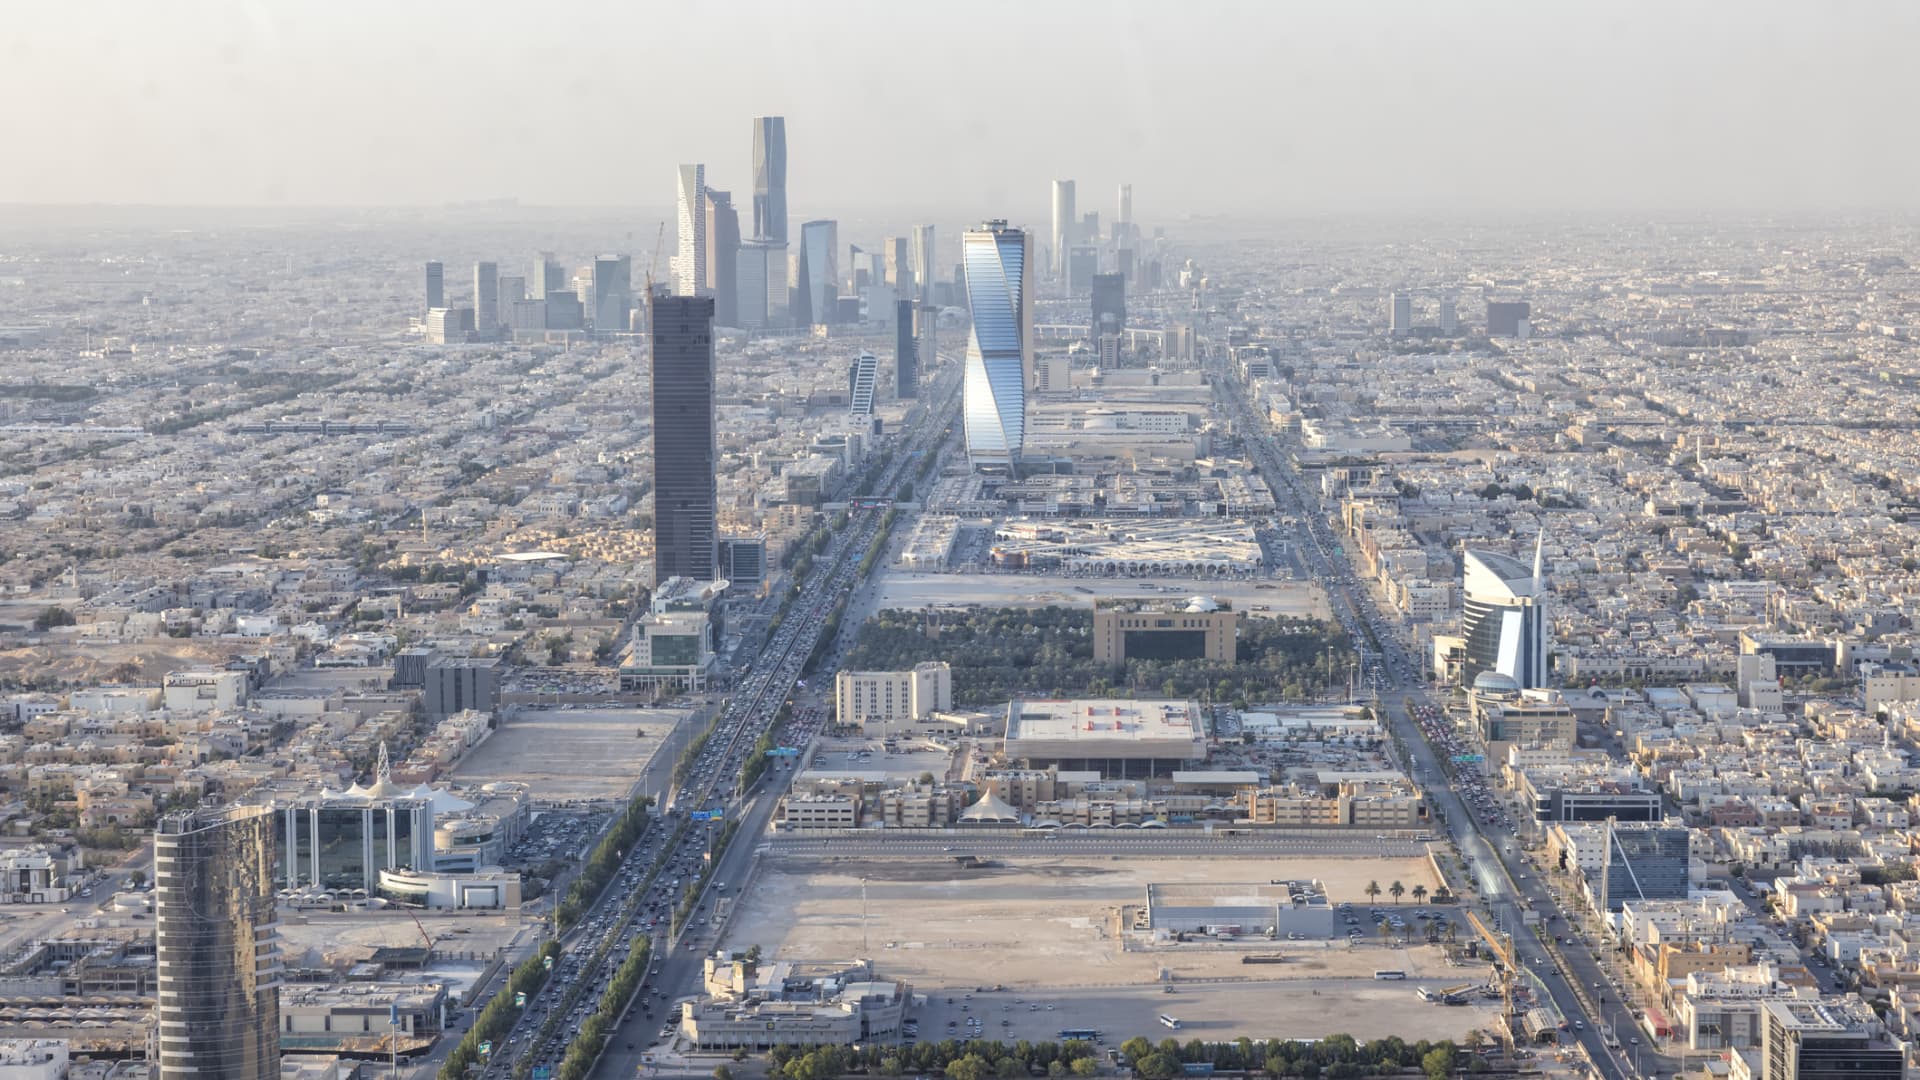 Saudi Arabia's economic growth slows as oil cuts, price drops bite into revenues